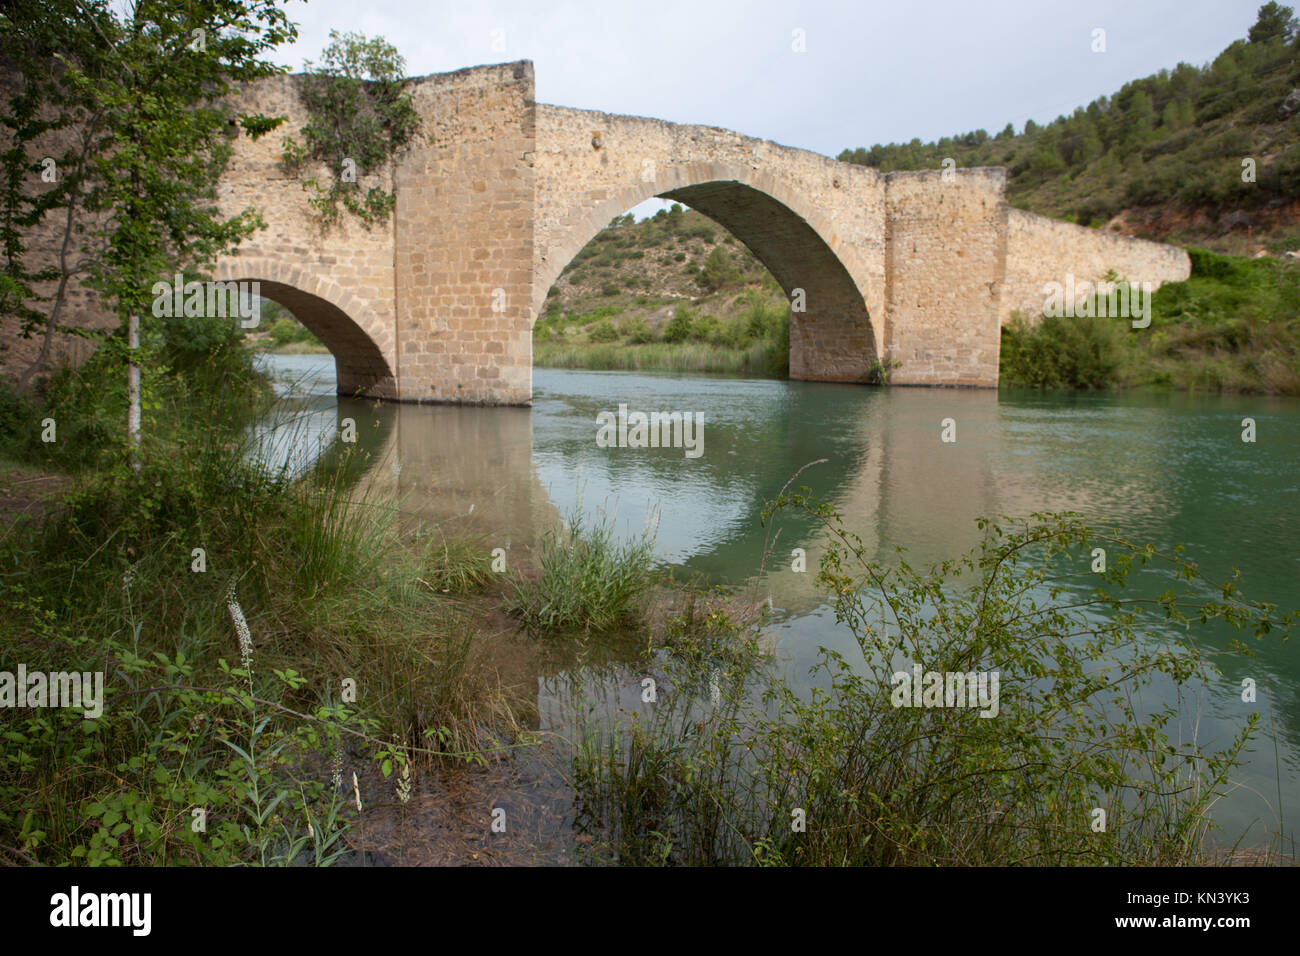 Medioevo antiguo puente cercano a Aunon village, Guadalajara, España. Foto de stock